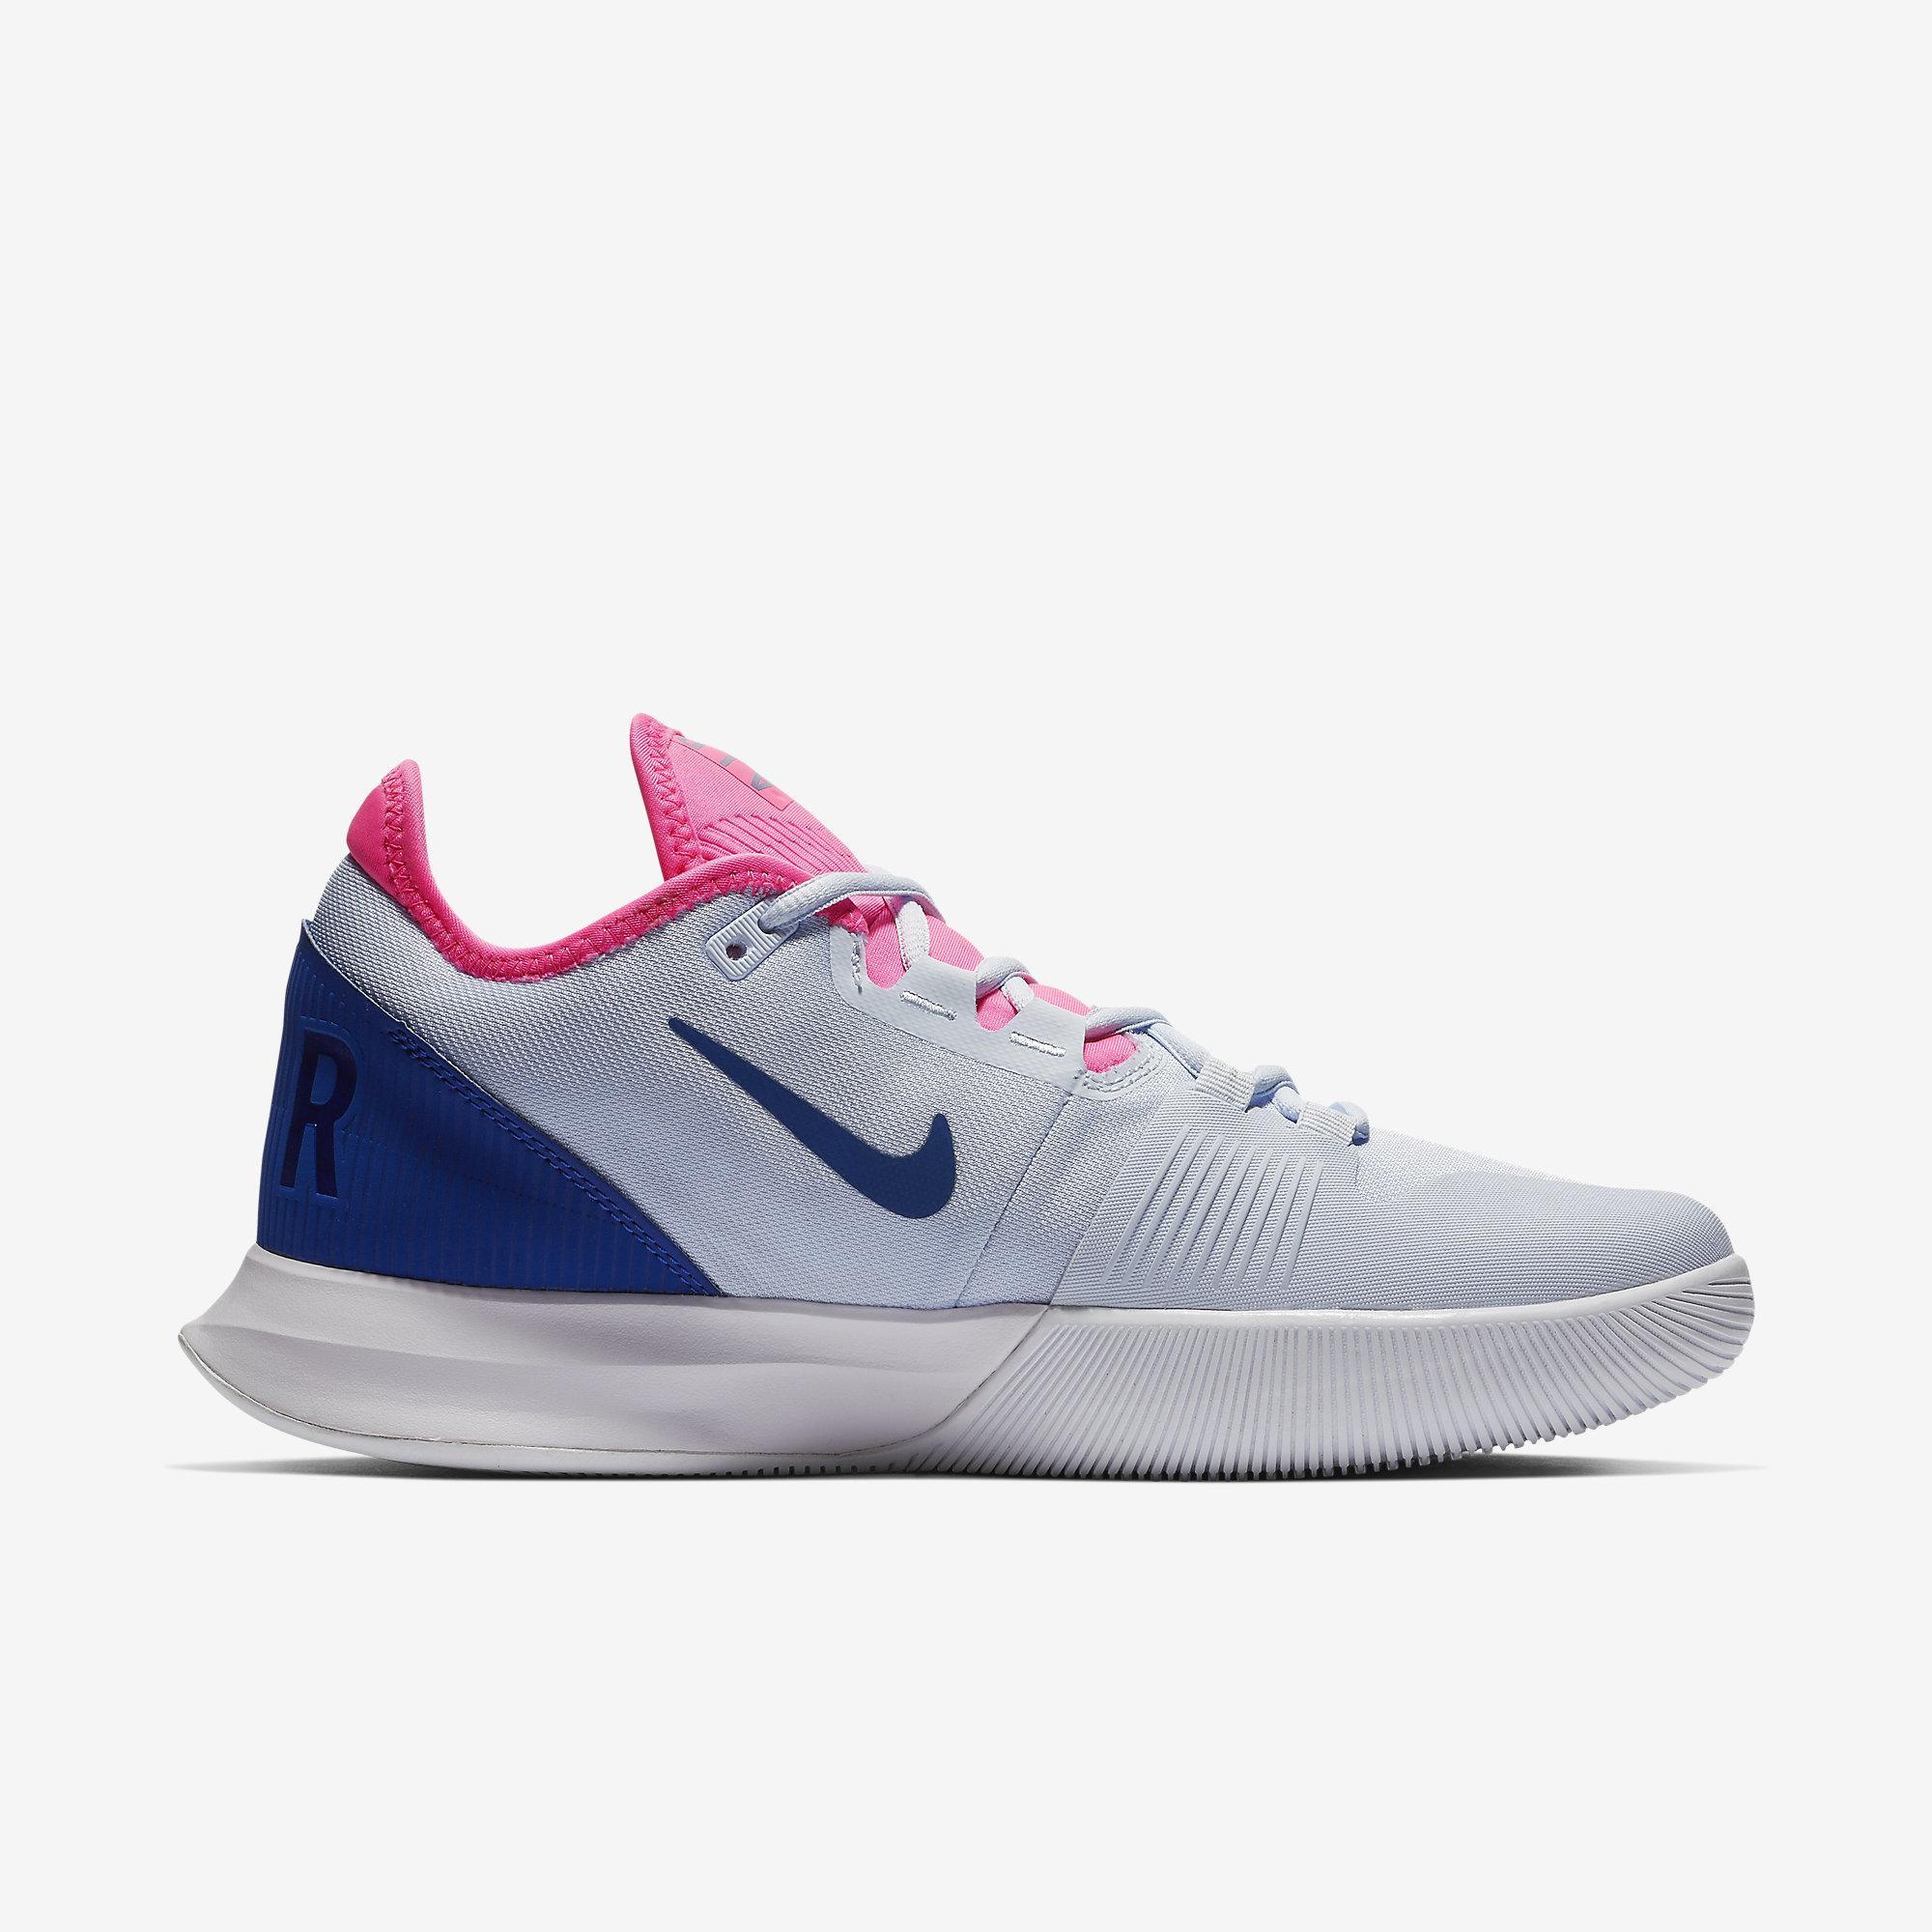 Nike Womens Air Max Wildcard Tennis Shoes - Blue/Pink/White ...